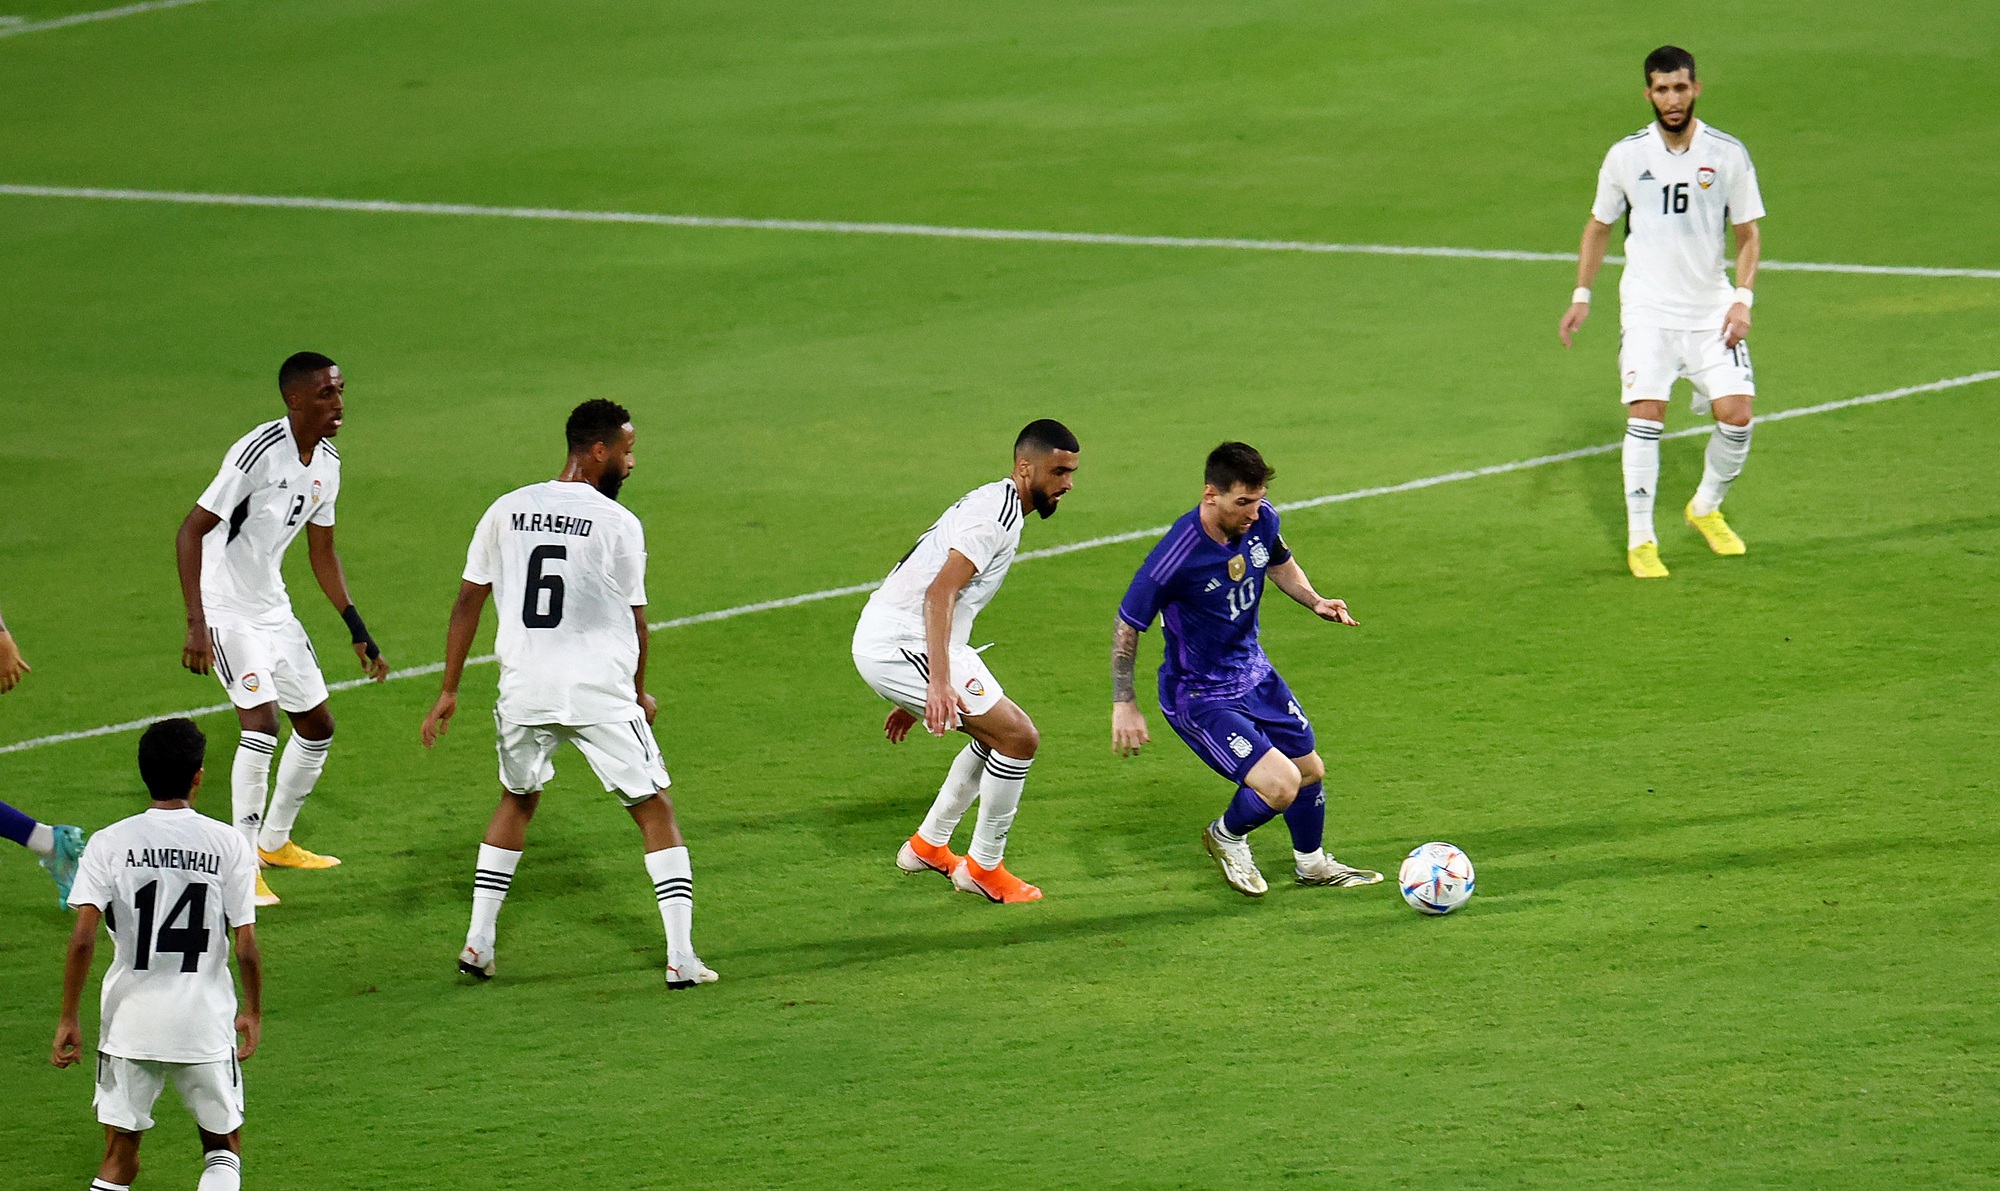 Croatia tiết lộ phương án bắt chết Lionel Messi ở bán kết - Ảnh 2.